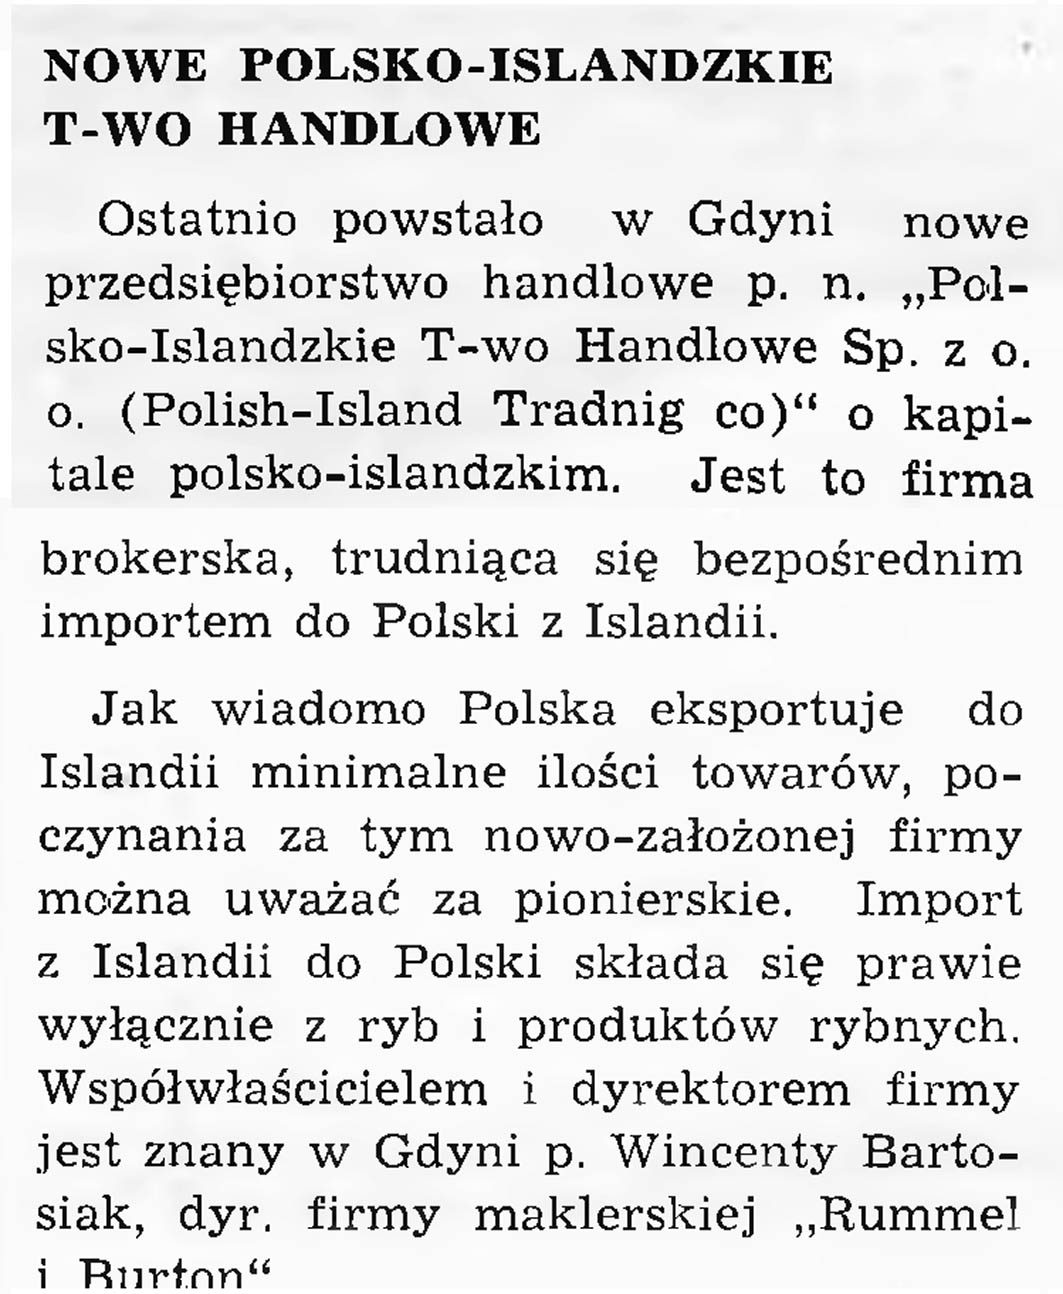 Nowe polsko-islandzkie towarzystwo Naukowe